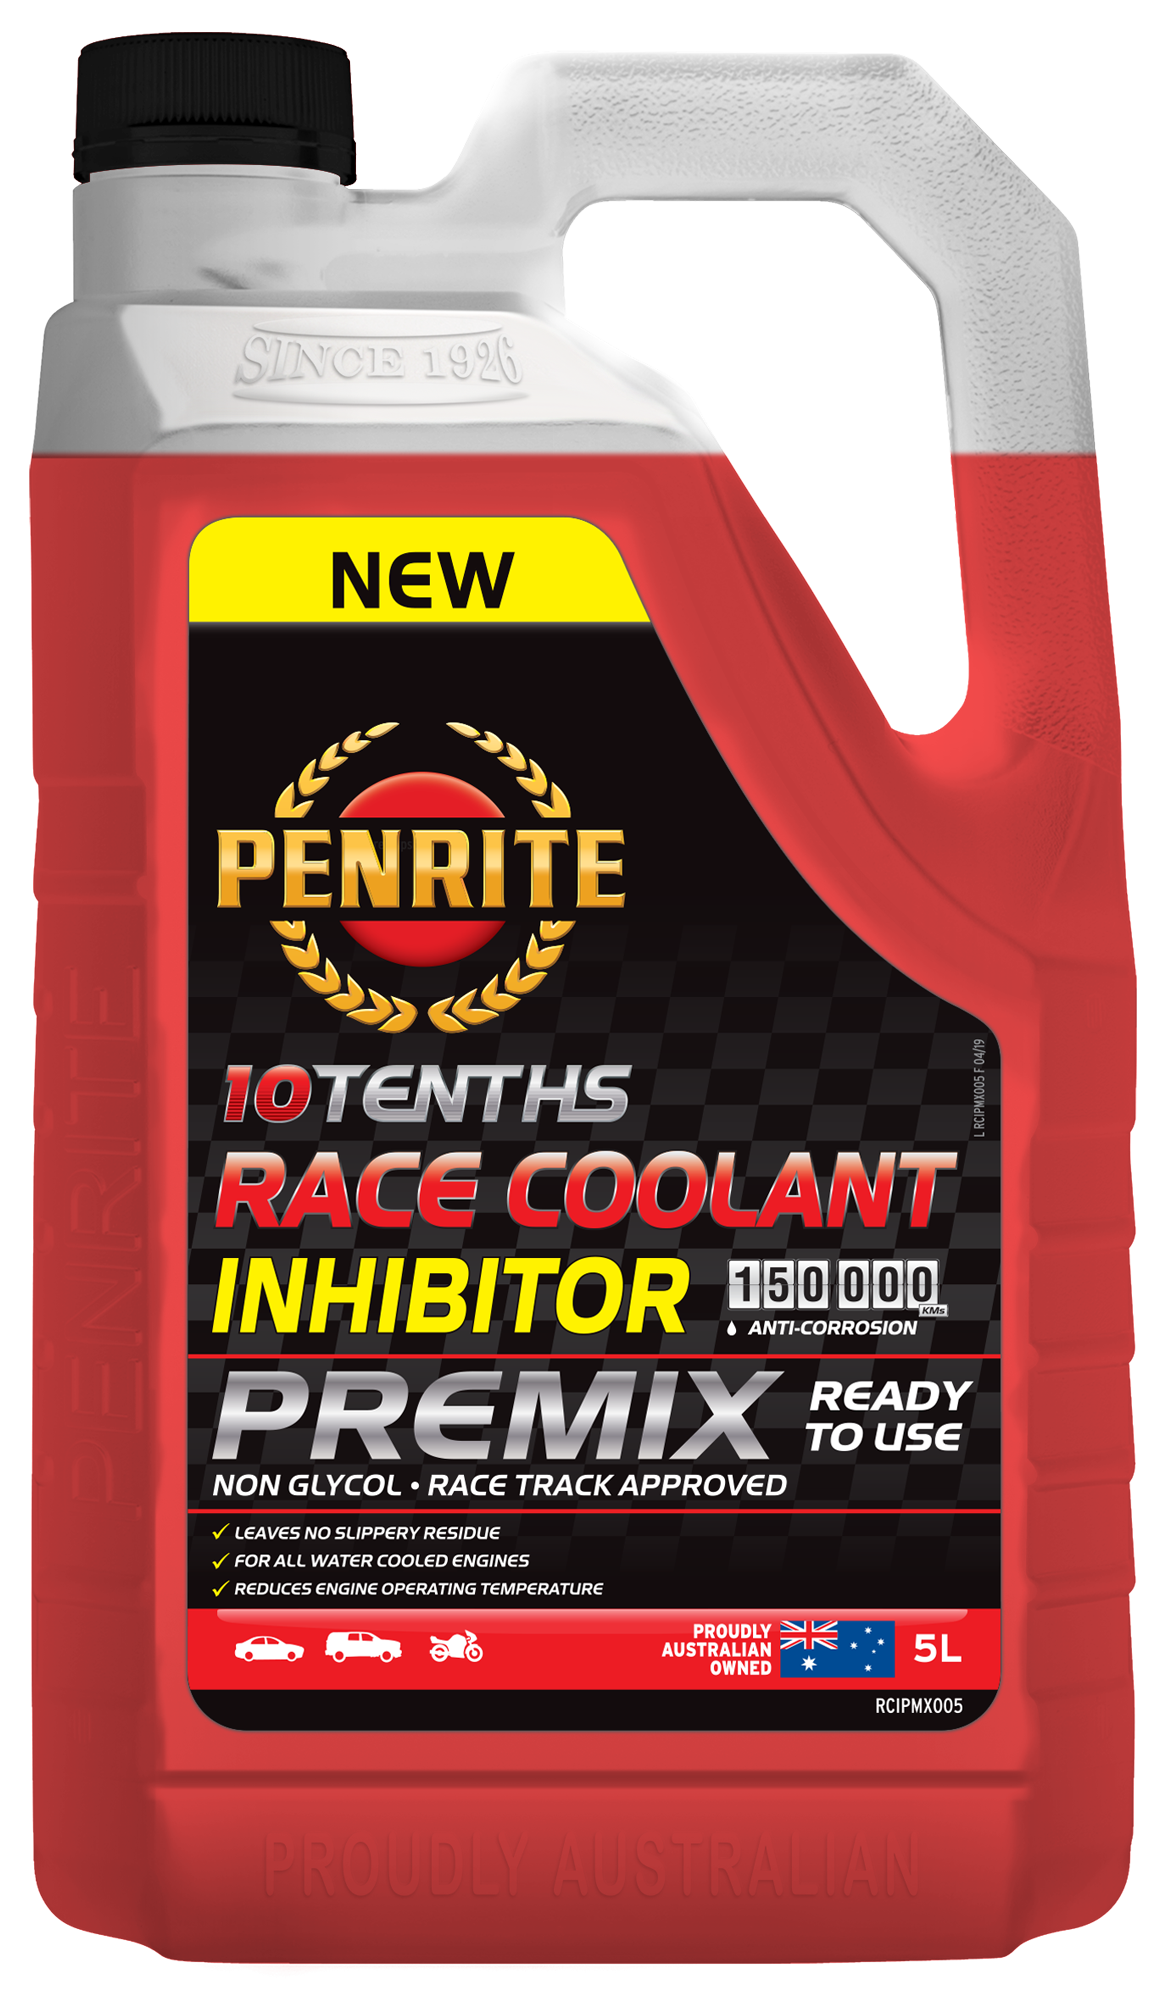 10 Tenths Race Coolant Inhibitor Premix 5L - Penrite | Universal Auto Spares